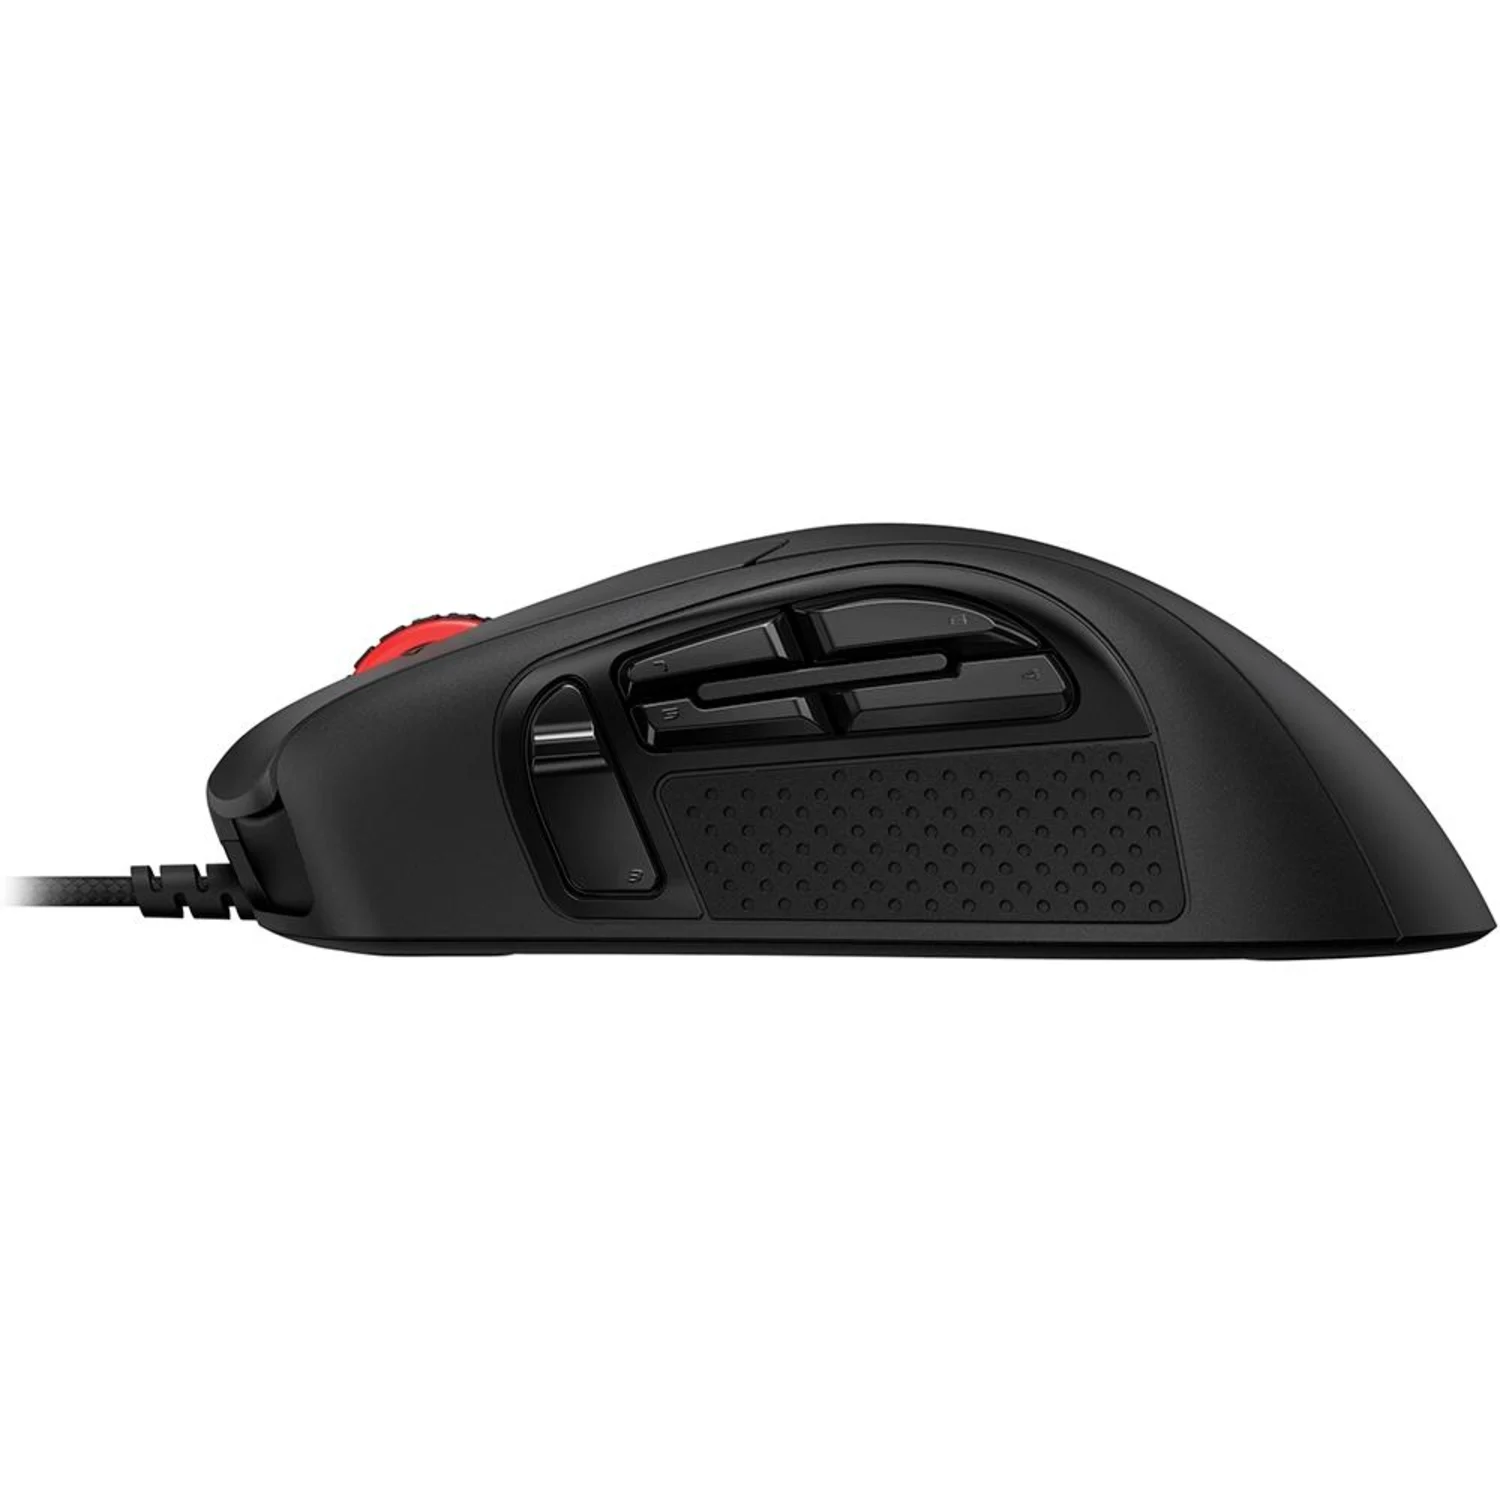 Mouse Kingston Hyper X Pulsefire Raid / RGB / 11 botões - Preto (HX-MC005B)